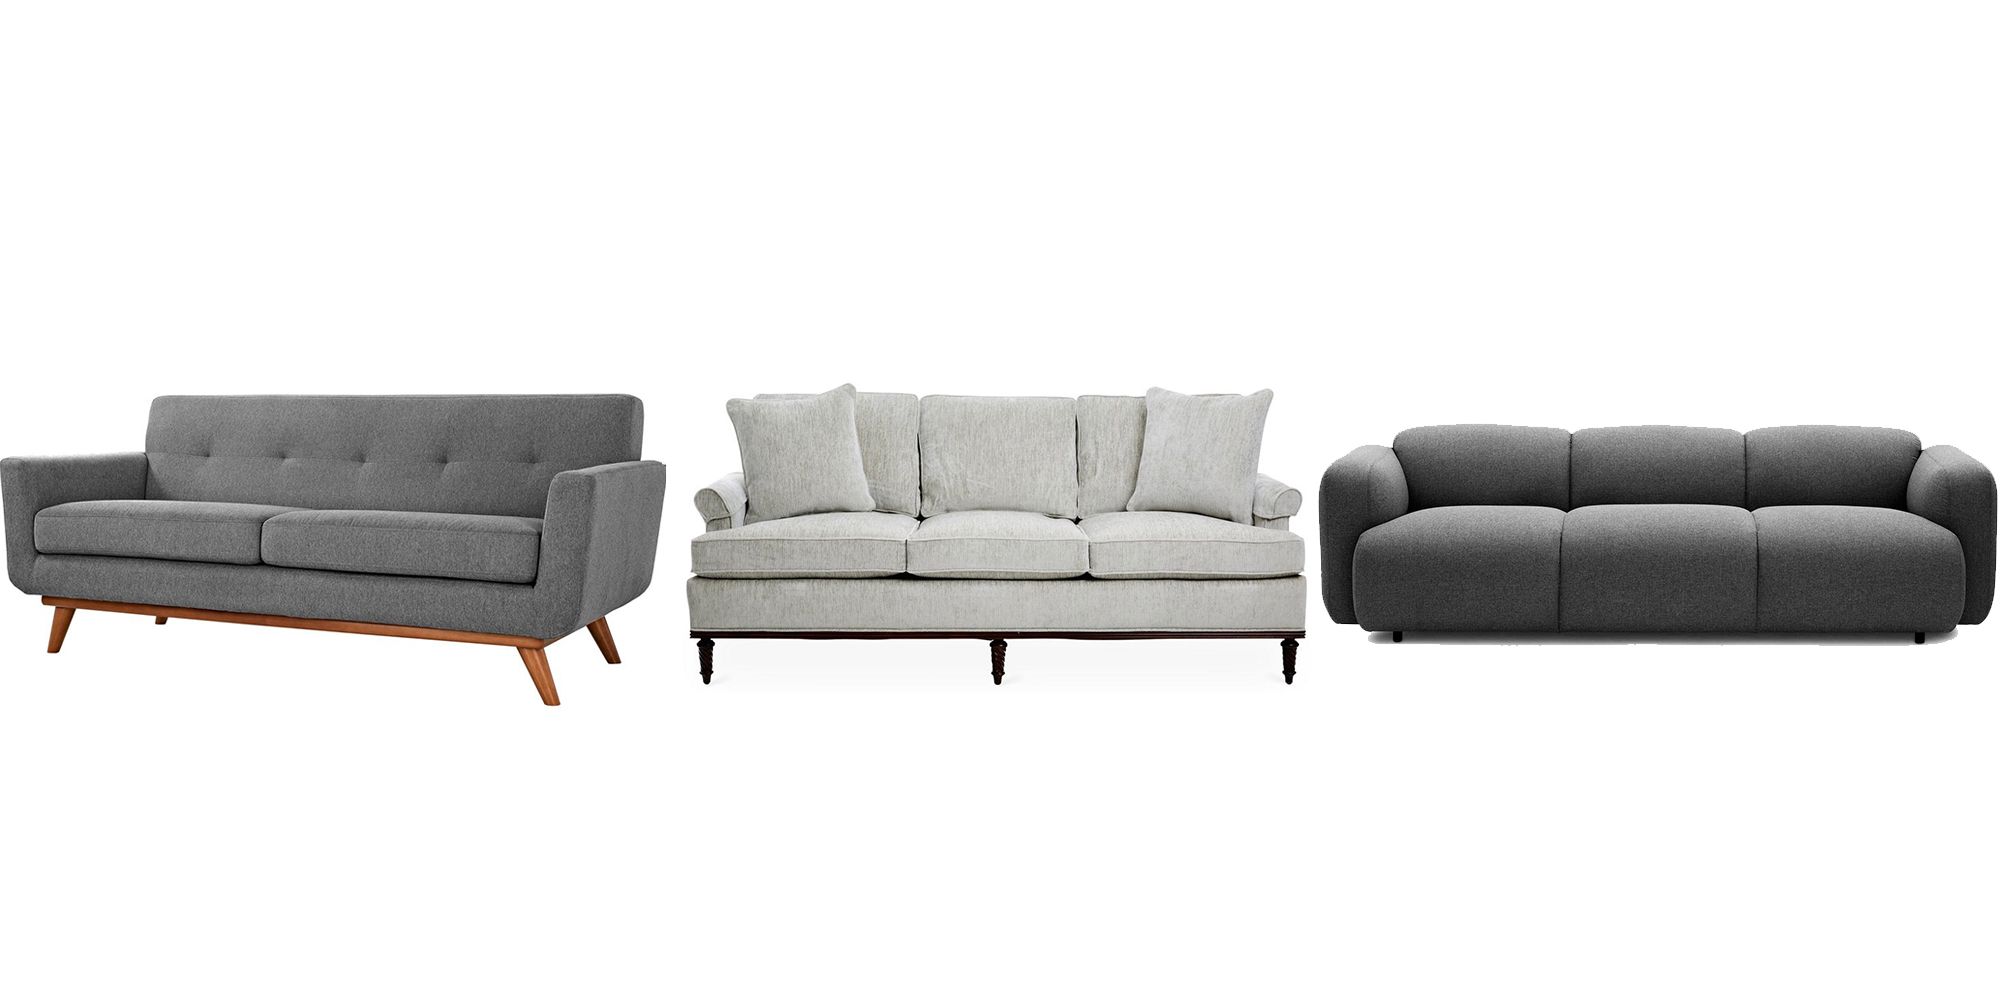 wenselijk Verdampen Ik wil niet 25 Grey Sofa Ideas for Living Room - Grey Couches For Sale